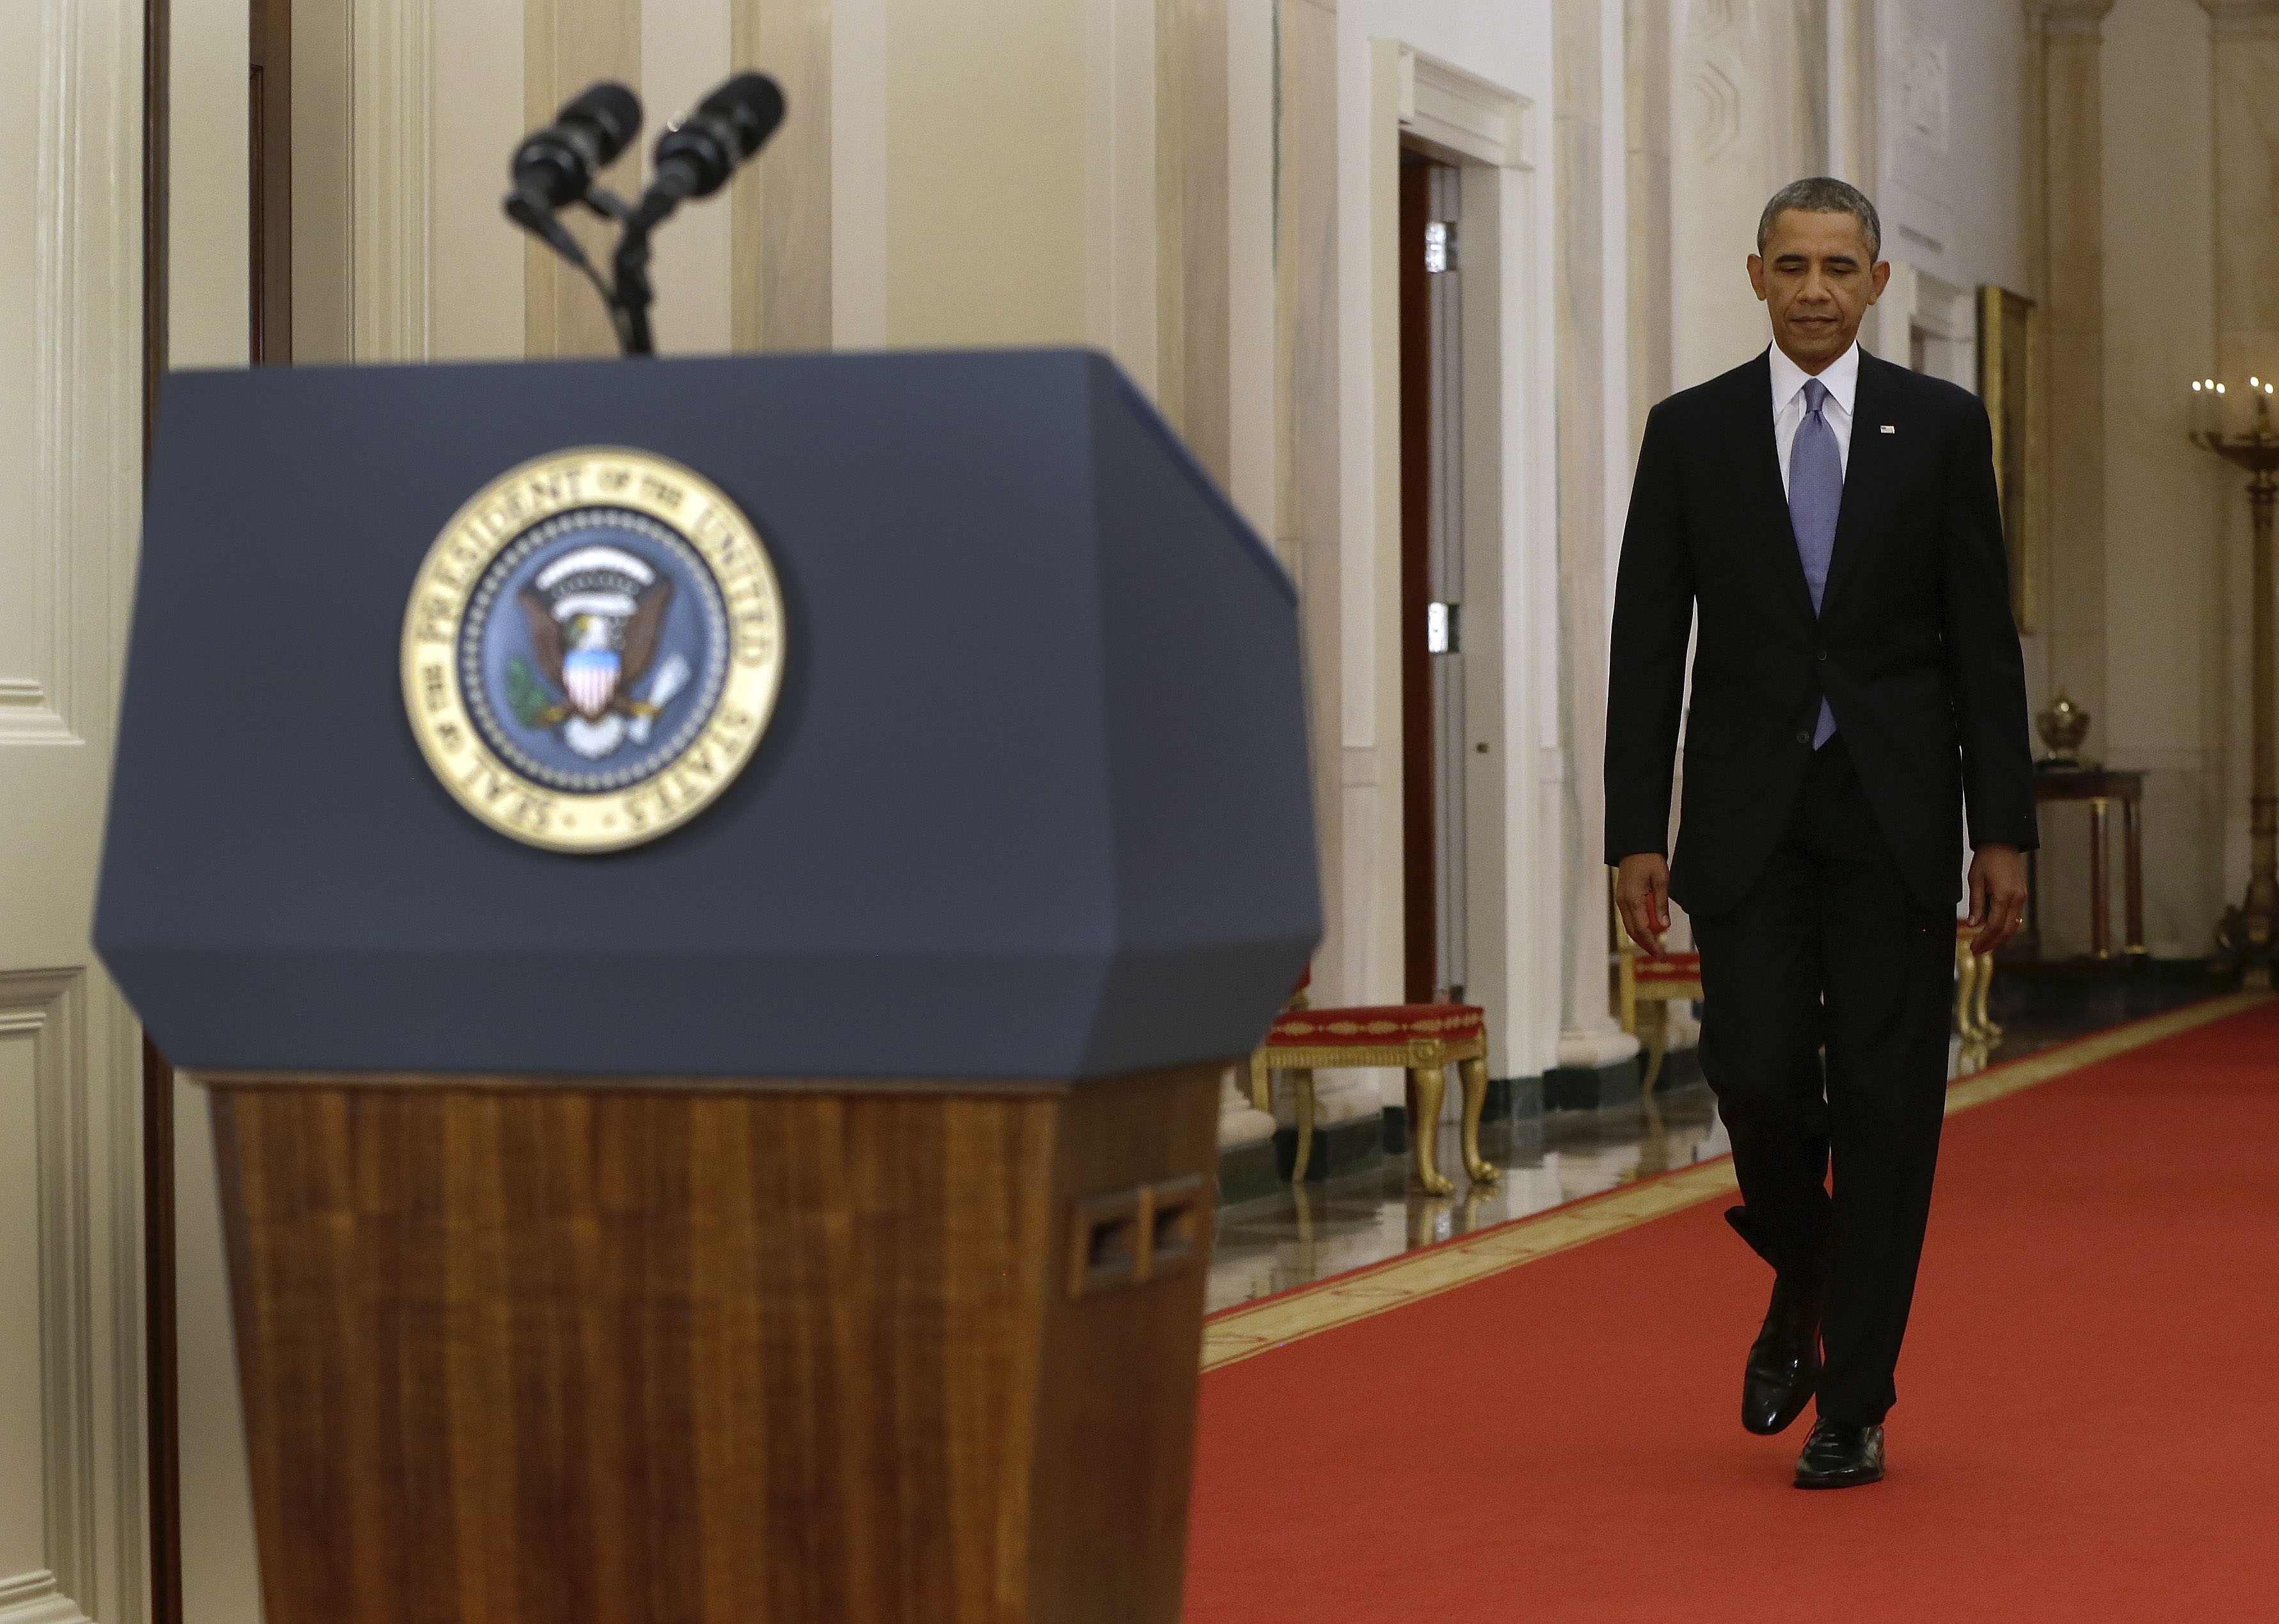 Με τη διπλωματία σε πρώτο πλάνο το διάγγελμα Ομπάμα για τη Συρία